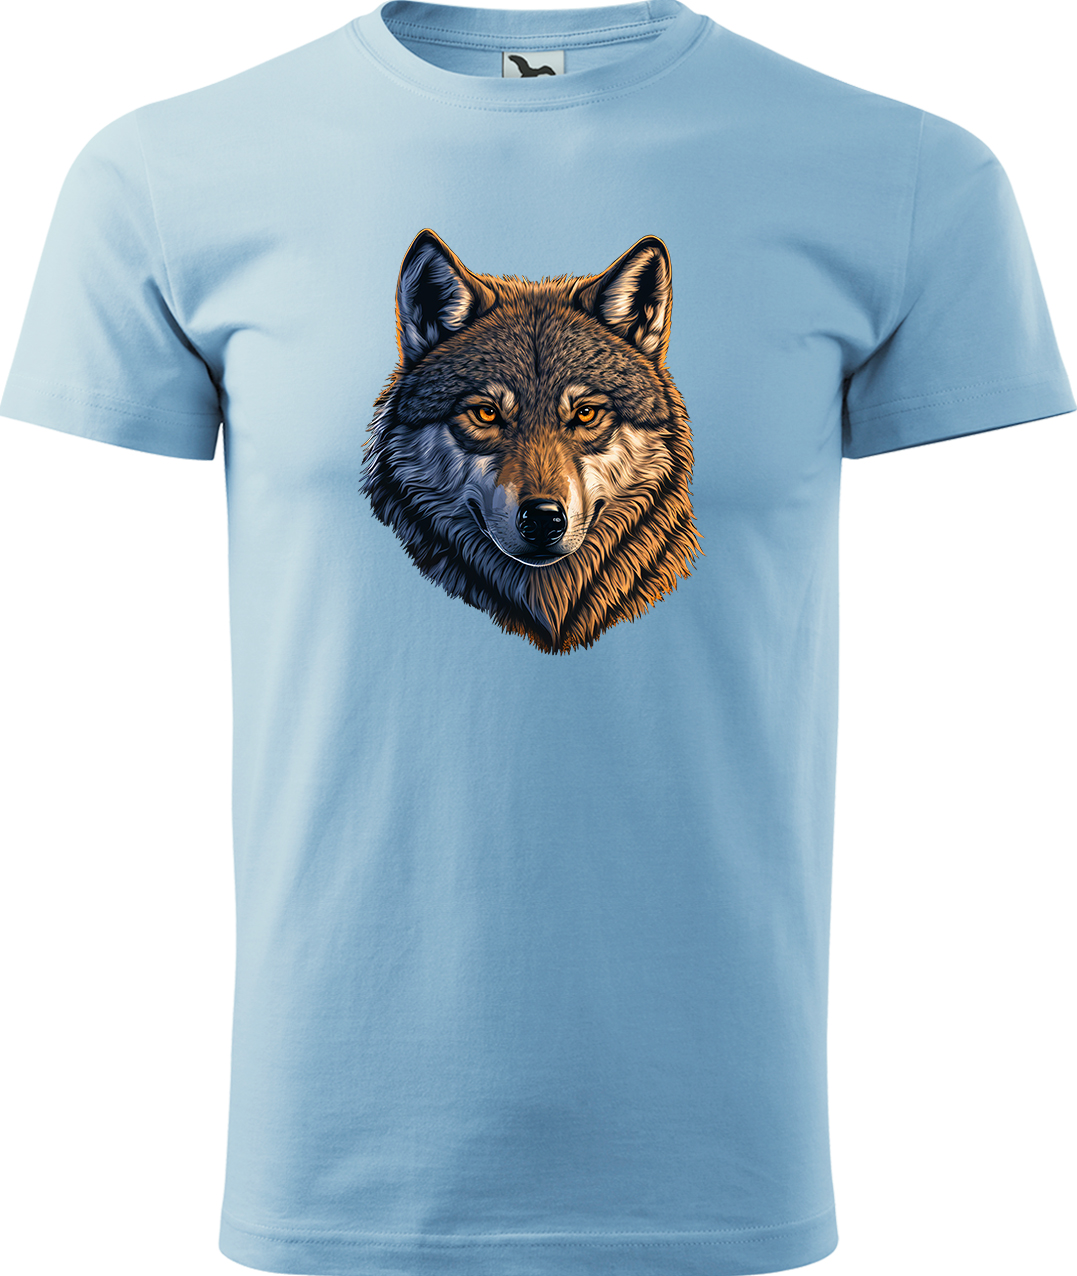 Pánské tričko s vlkem - Hlava vlka Velikost: L, Barva: Nebesky modrá (15), Střih: pánský